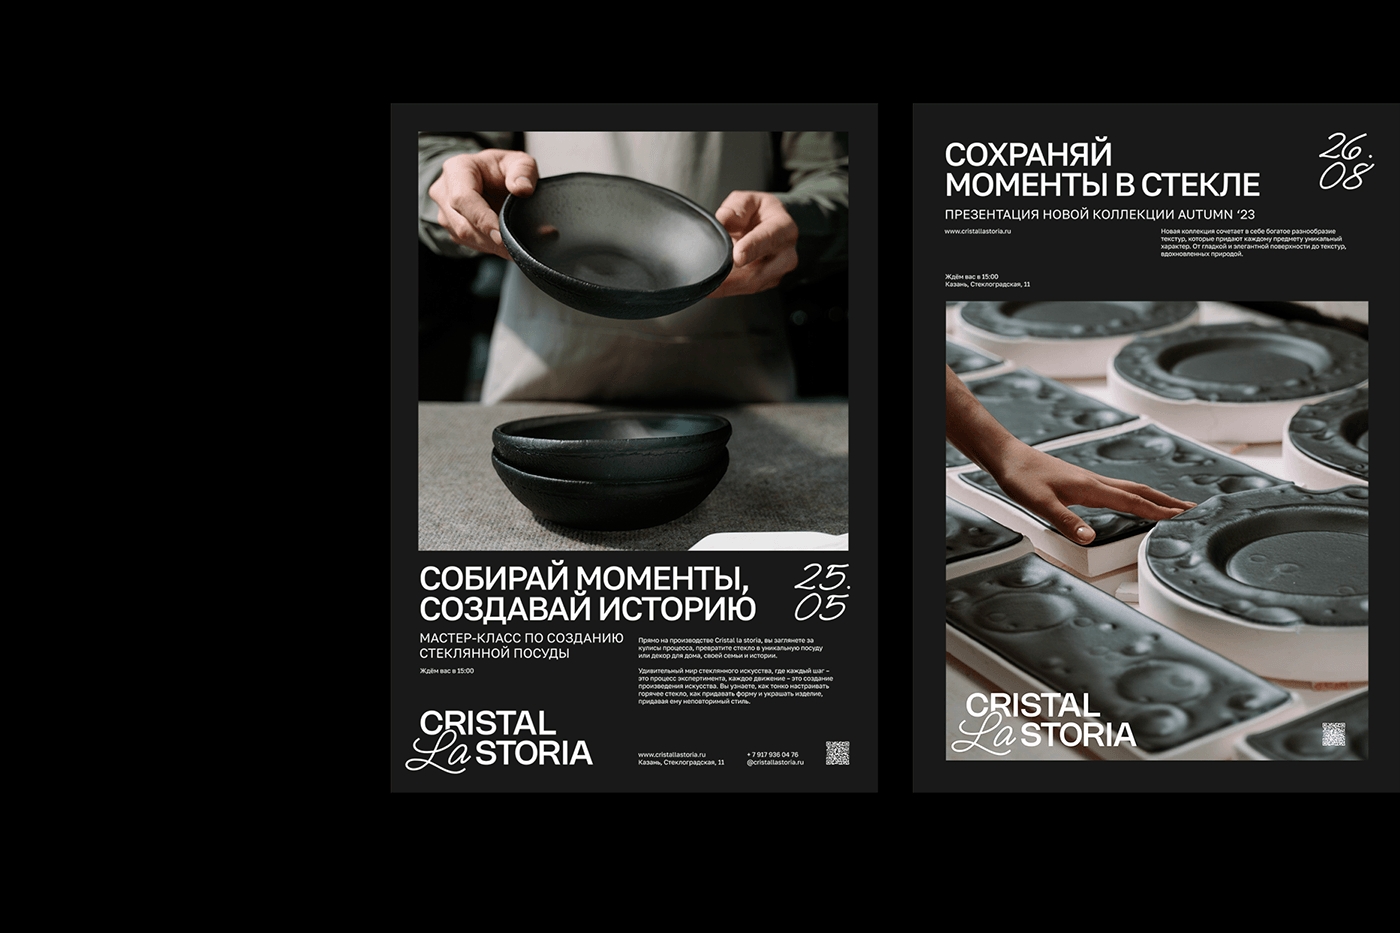 Постеры: мастер-класс и презентация новой коллекции посуды